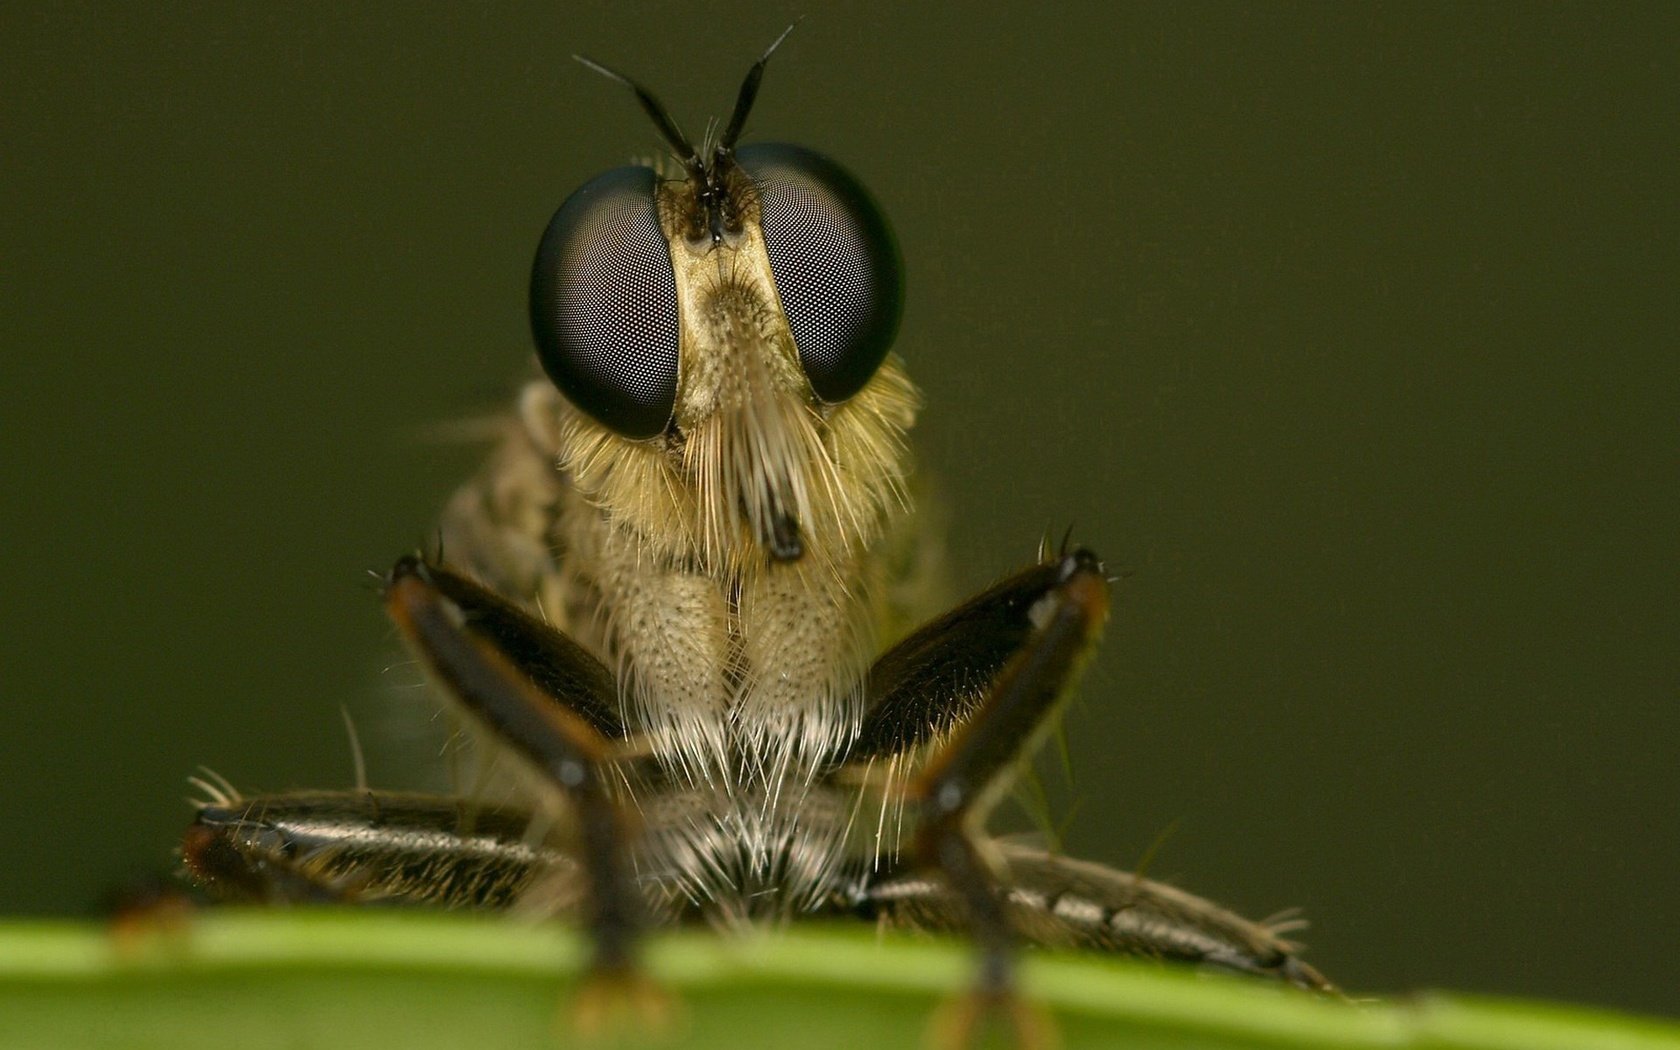 Insect legs. Лапки мухи. Глаза мухи. Насекомые под макросъемкой. Муха крупным планом.